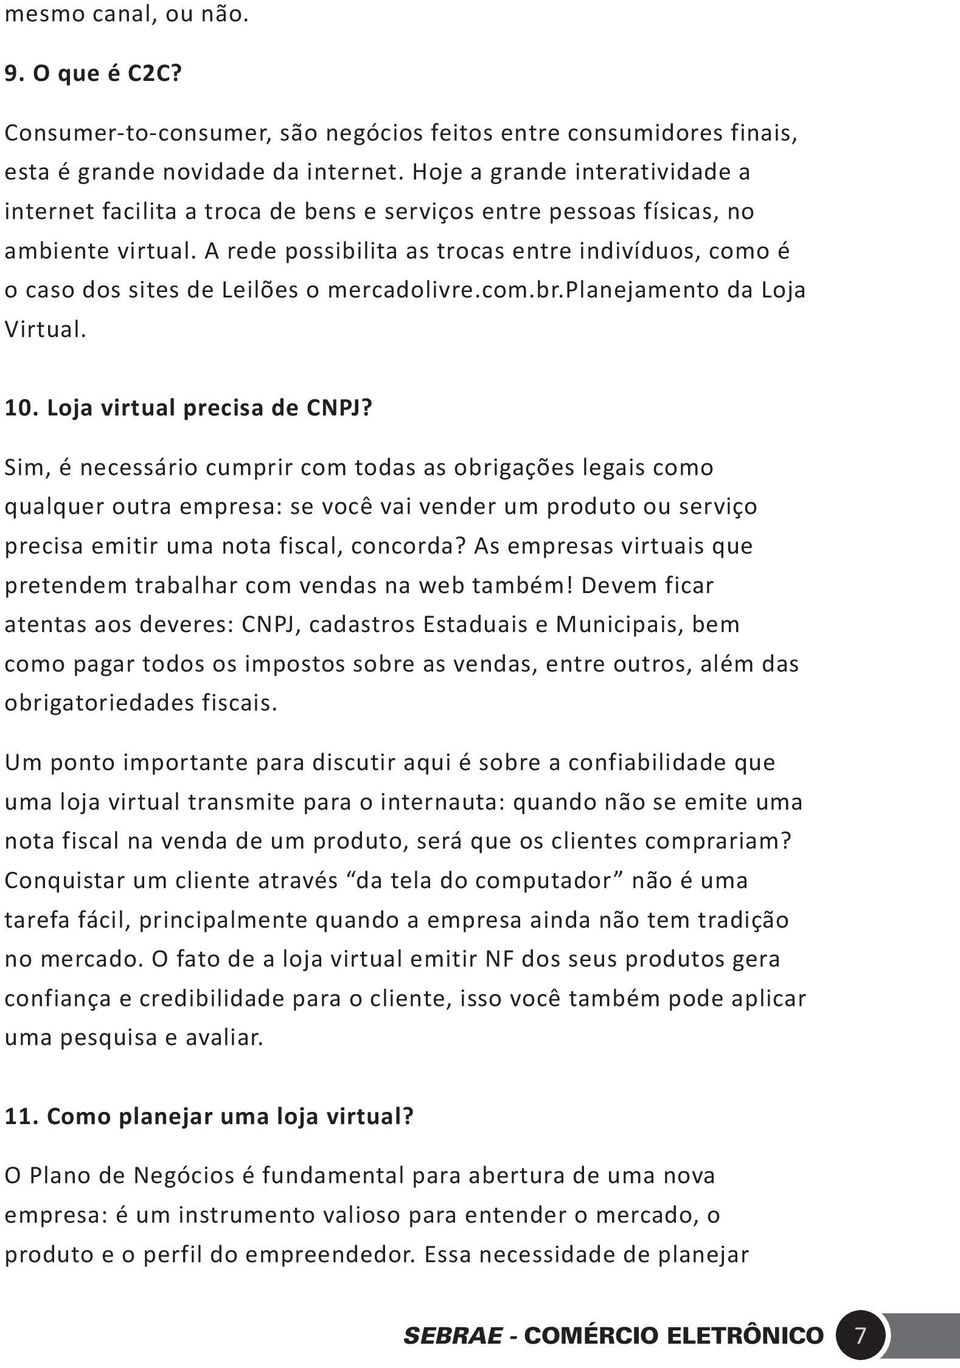 A rede possibilita as trocas entre indivíduos, como é o caso dos sites de Leilões o mercadolivre.com.br.planejamento da Loja Virtual. 10. Loja virtual precisa de CNPJ?